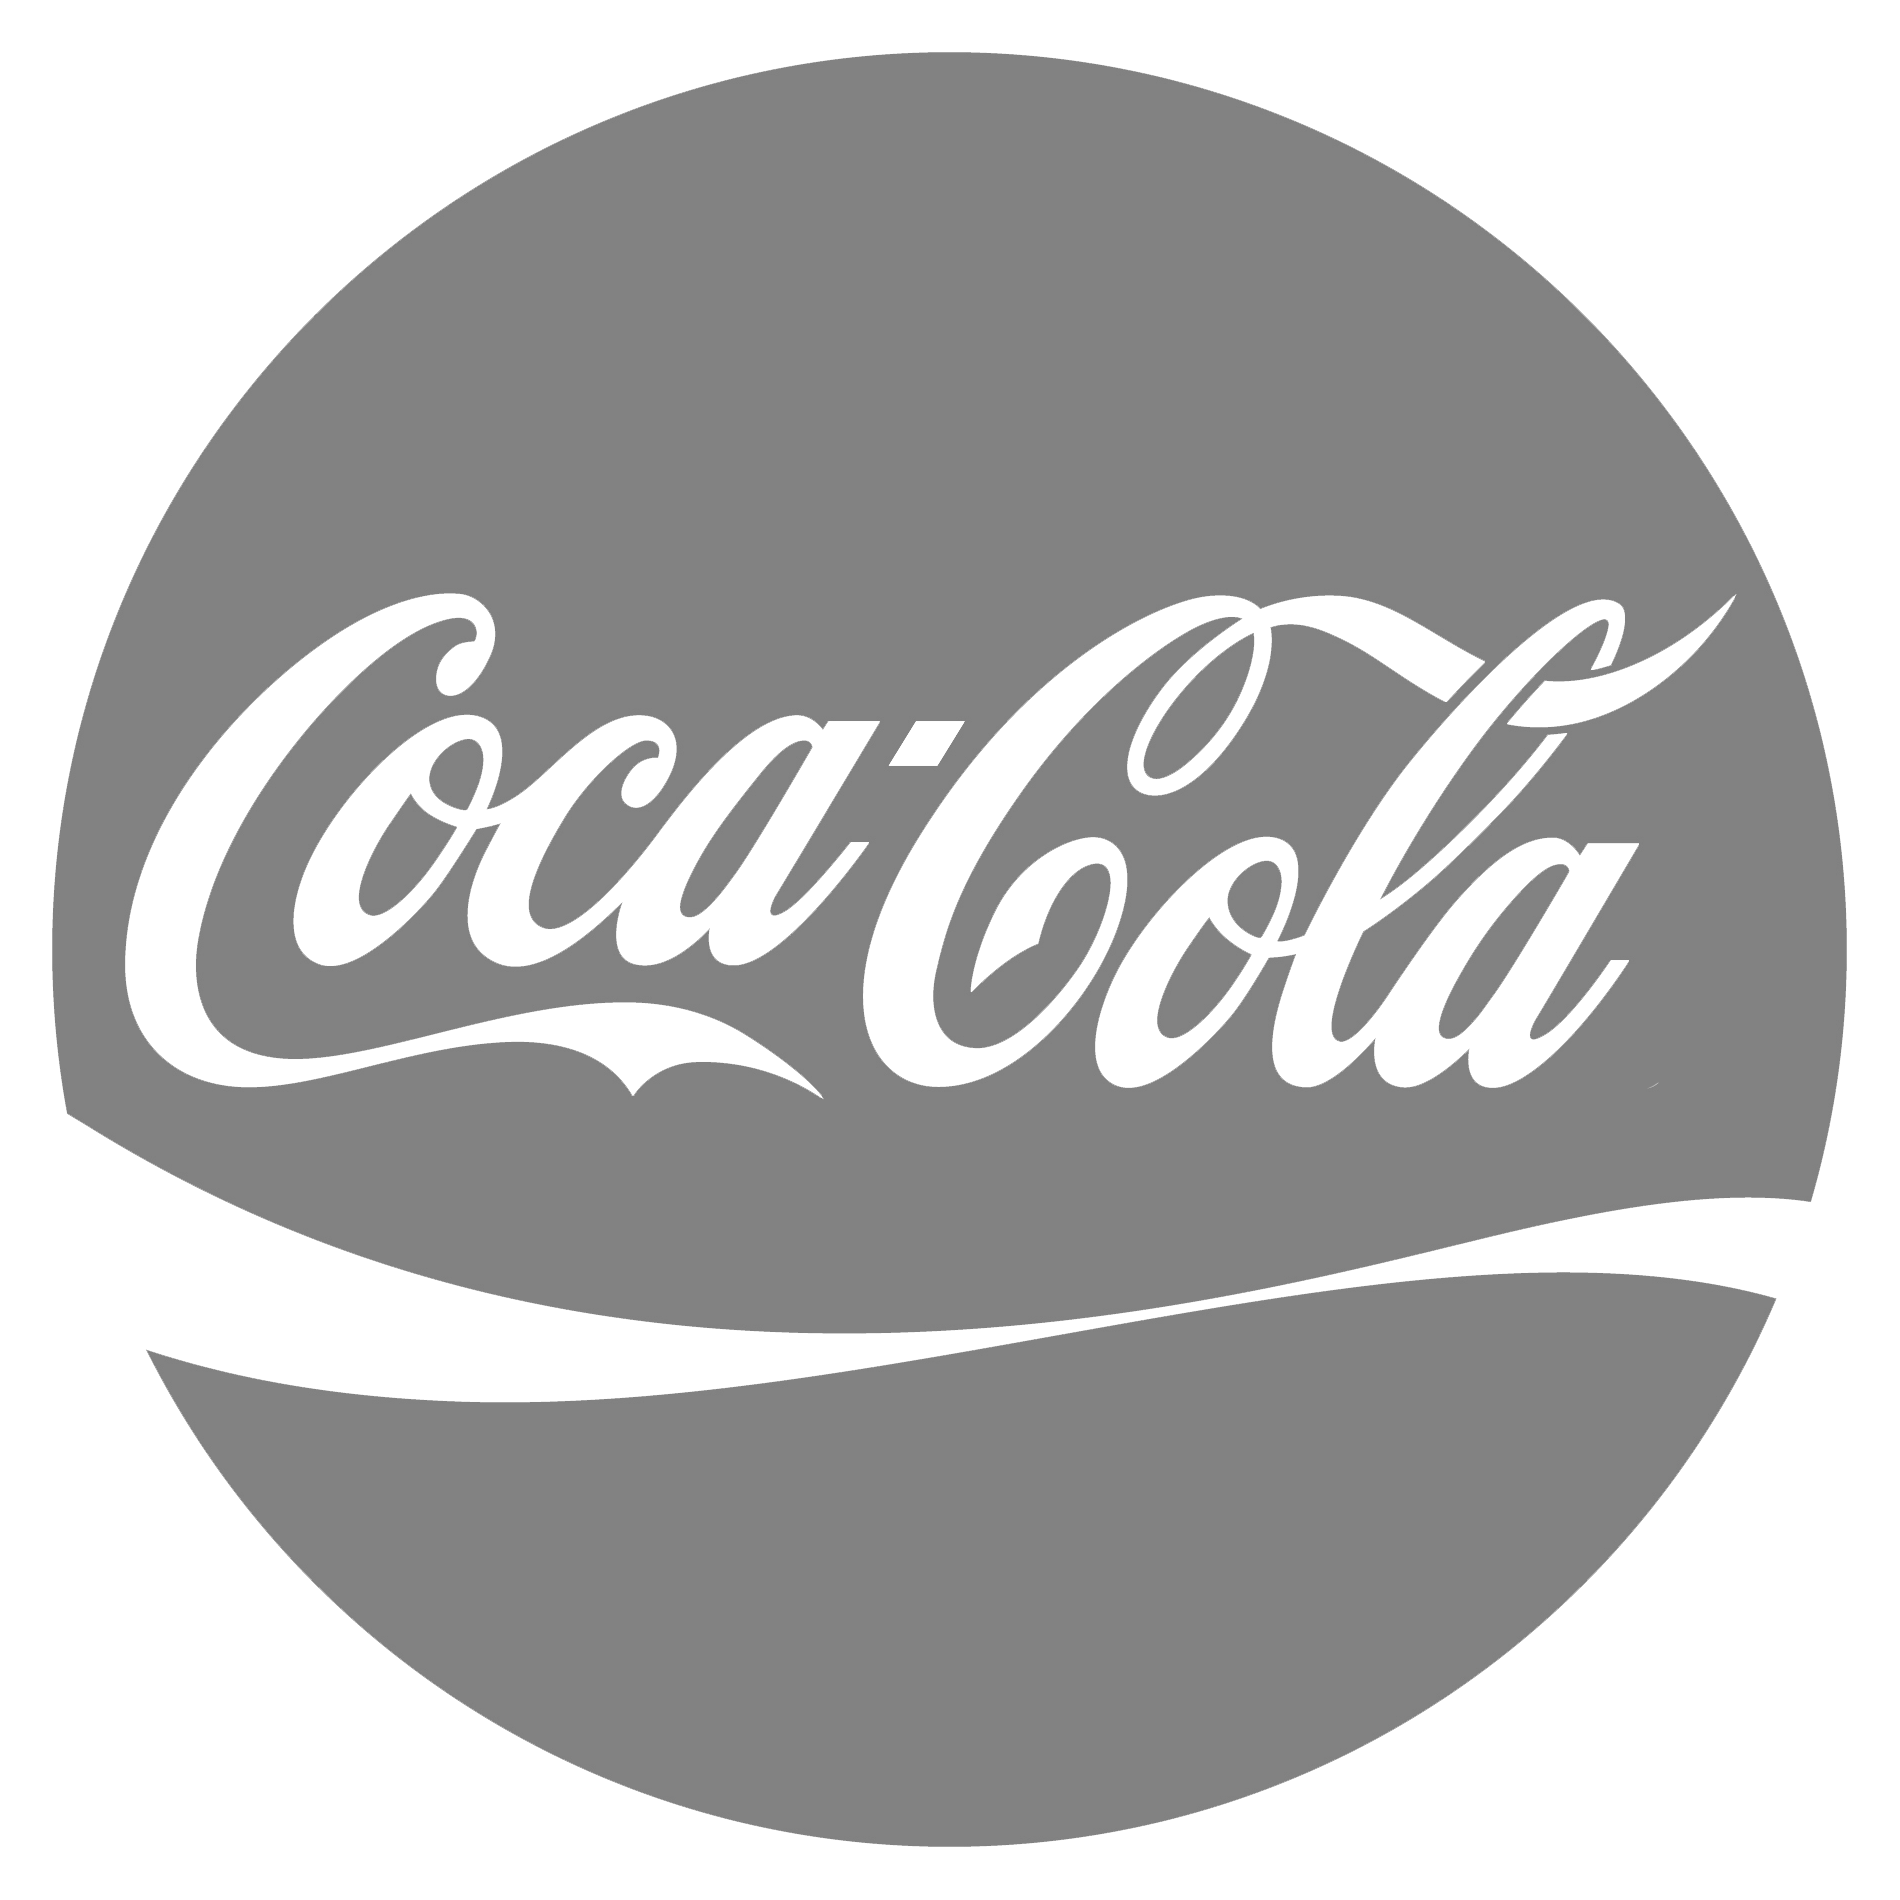 download-coca-cola-logo-PNG-transparent-images-transparent-backgrounds-PNGRIVER-COM-Coca-Cola-Logo.png